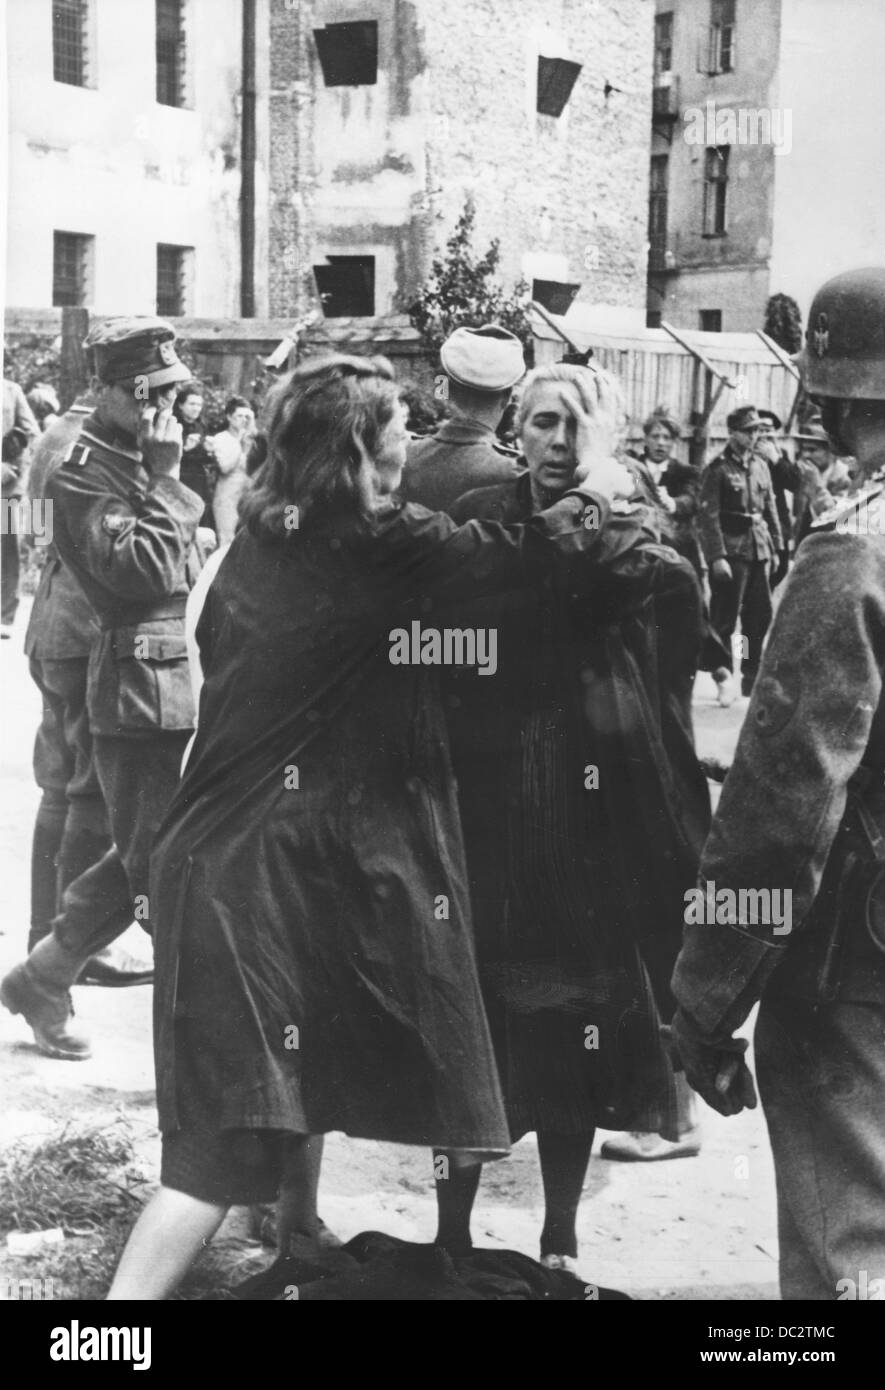 À la suite de l'attaque allemande contre l'Union soviétique le 22 juin 1941, la NKVD / GPU (police secrète soviétique) a commis des meurtres de masse sur ses prisonniers politiques dans la ville de Lviv (Lemberg), une ville occupée par l'Armée rouge. La propagande nazie! Au dos de l'image est daté du 5 juillet 1941: 'Lemberg après sa capture. Dans la prison GPU de Lemberg, 2-3000 Ukrainiens ont été massacrés par les Soviétiques. Des scènes dramatiques se déroulaient au sein de la population. » Fotoarchiv für Zeitgeschichte Banque D'Images